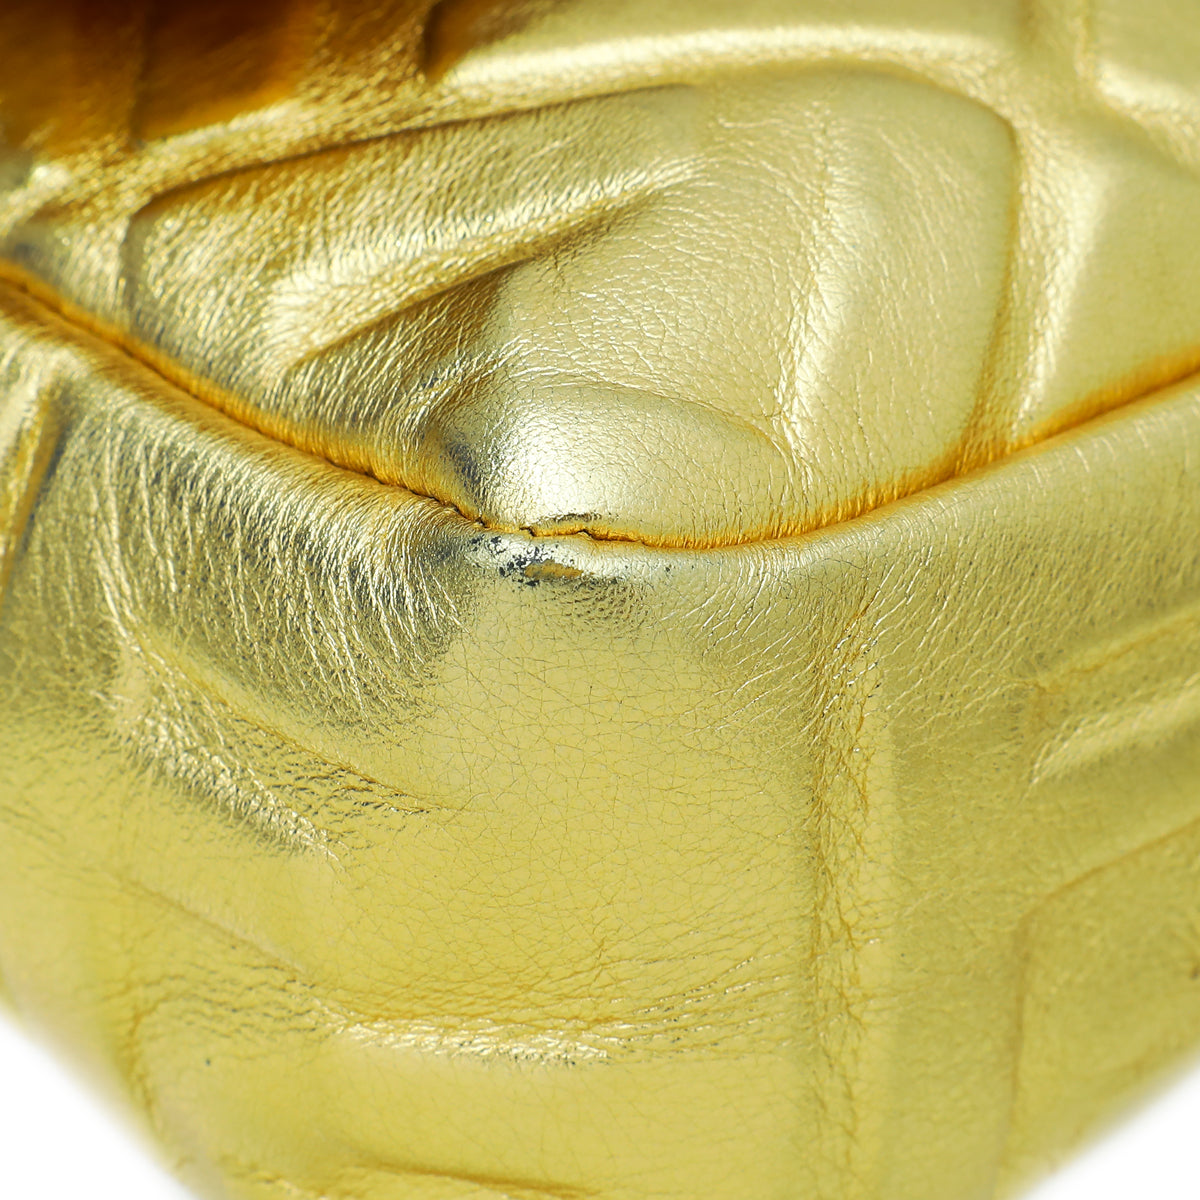 Fendi Gold FF Embossed Baguette Medium Bag